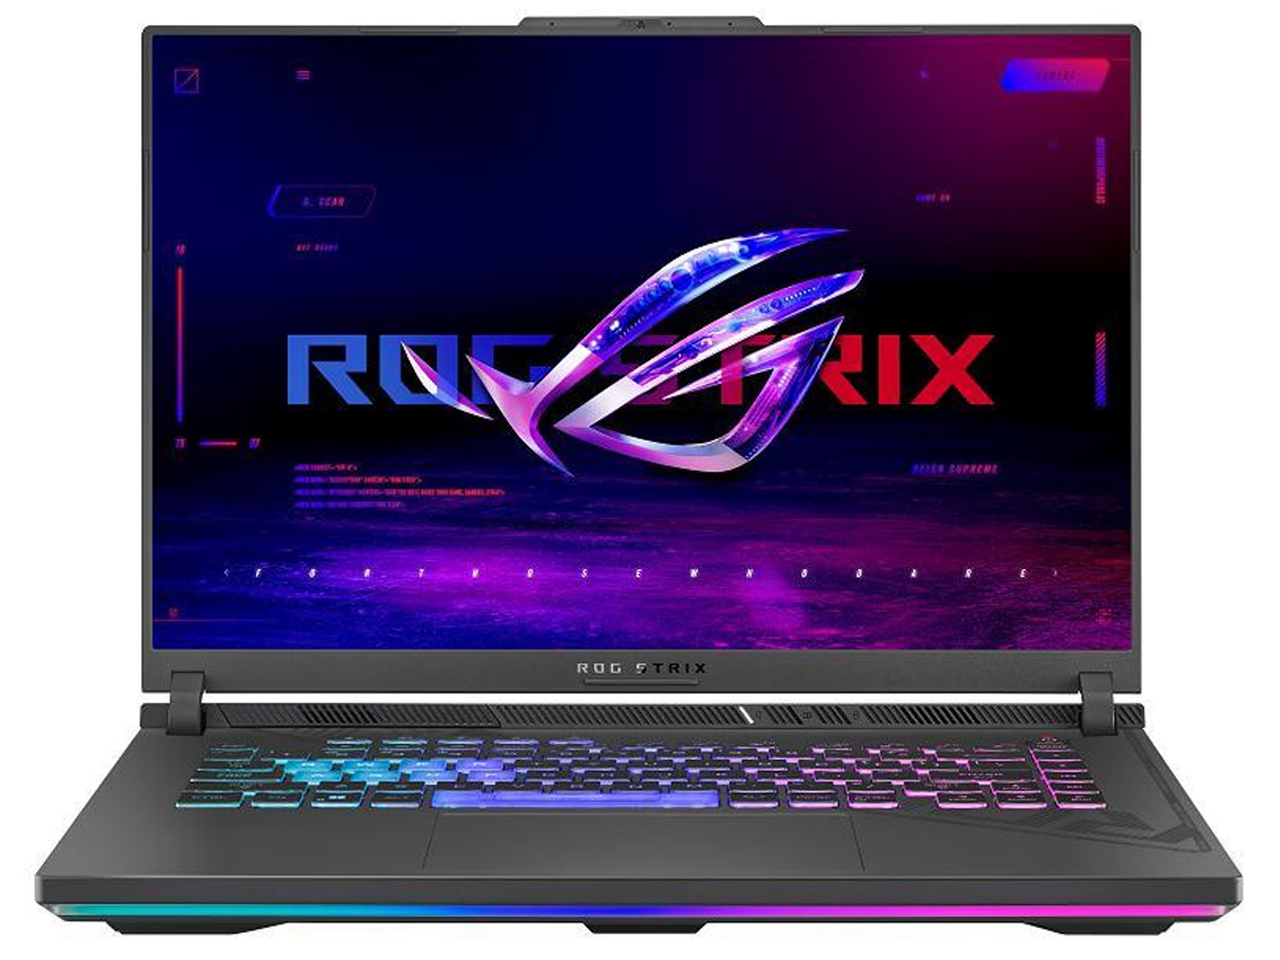 ASUS ROG Strix Gaming Laptop